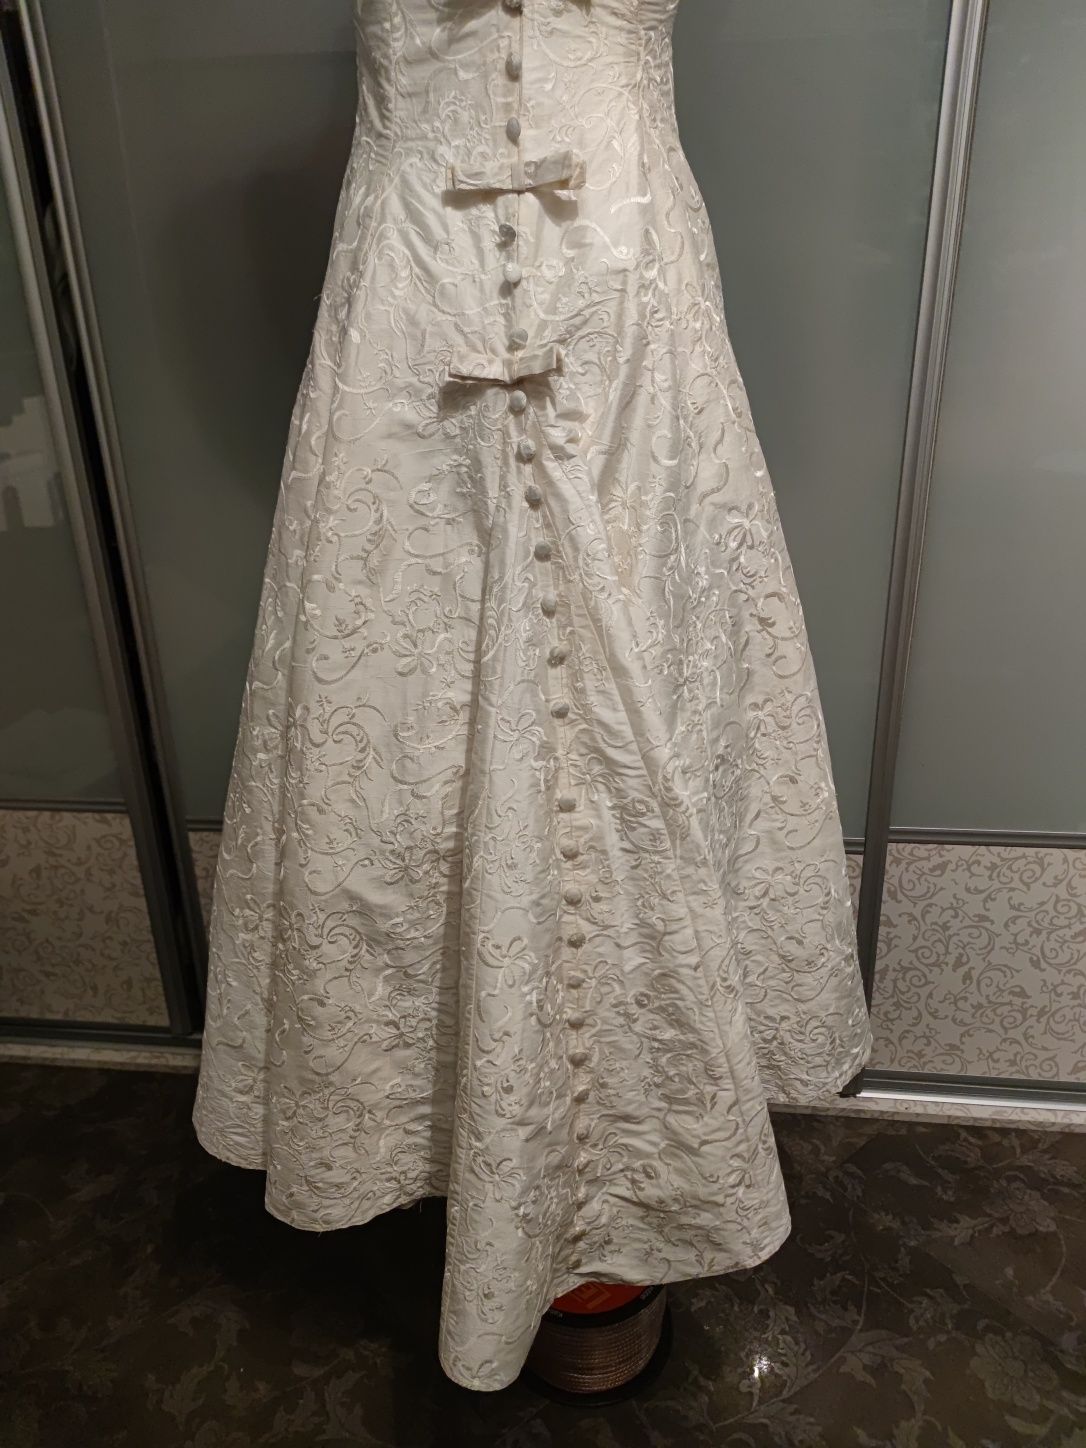 Suknia ślubna 36 na 158 cm wzrostu, jedwab ecru.